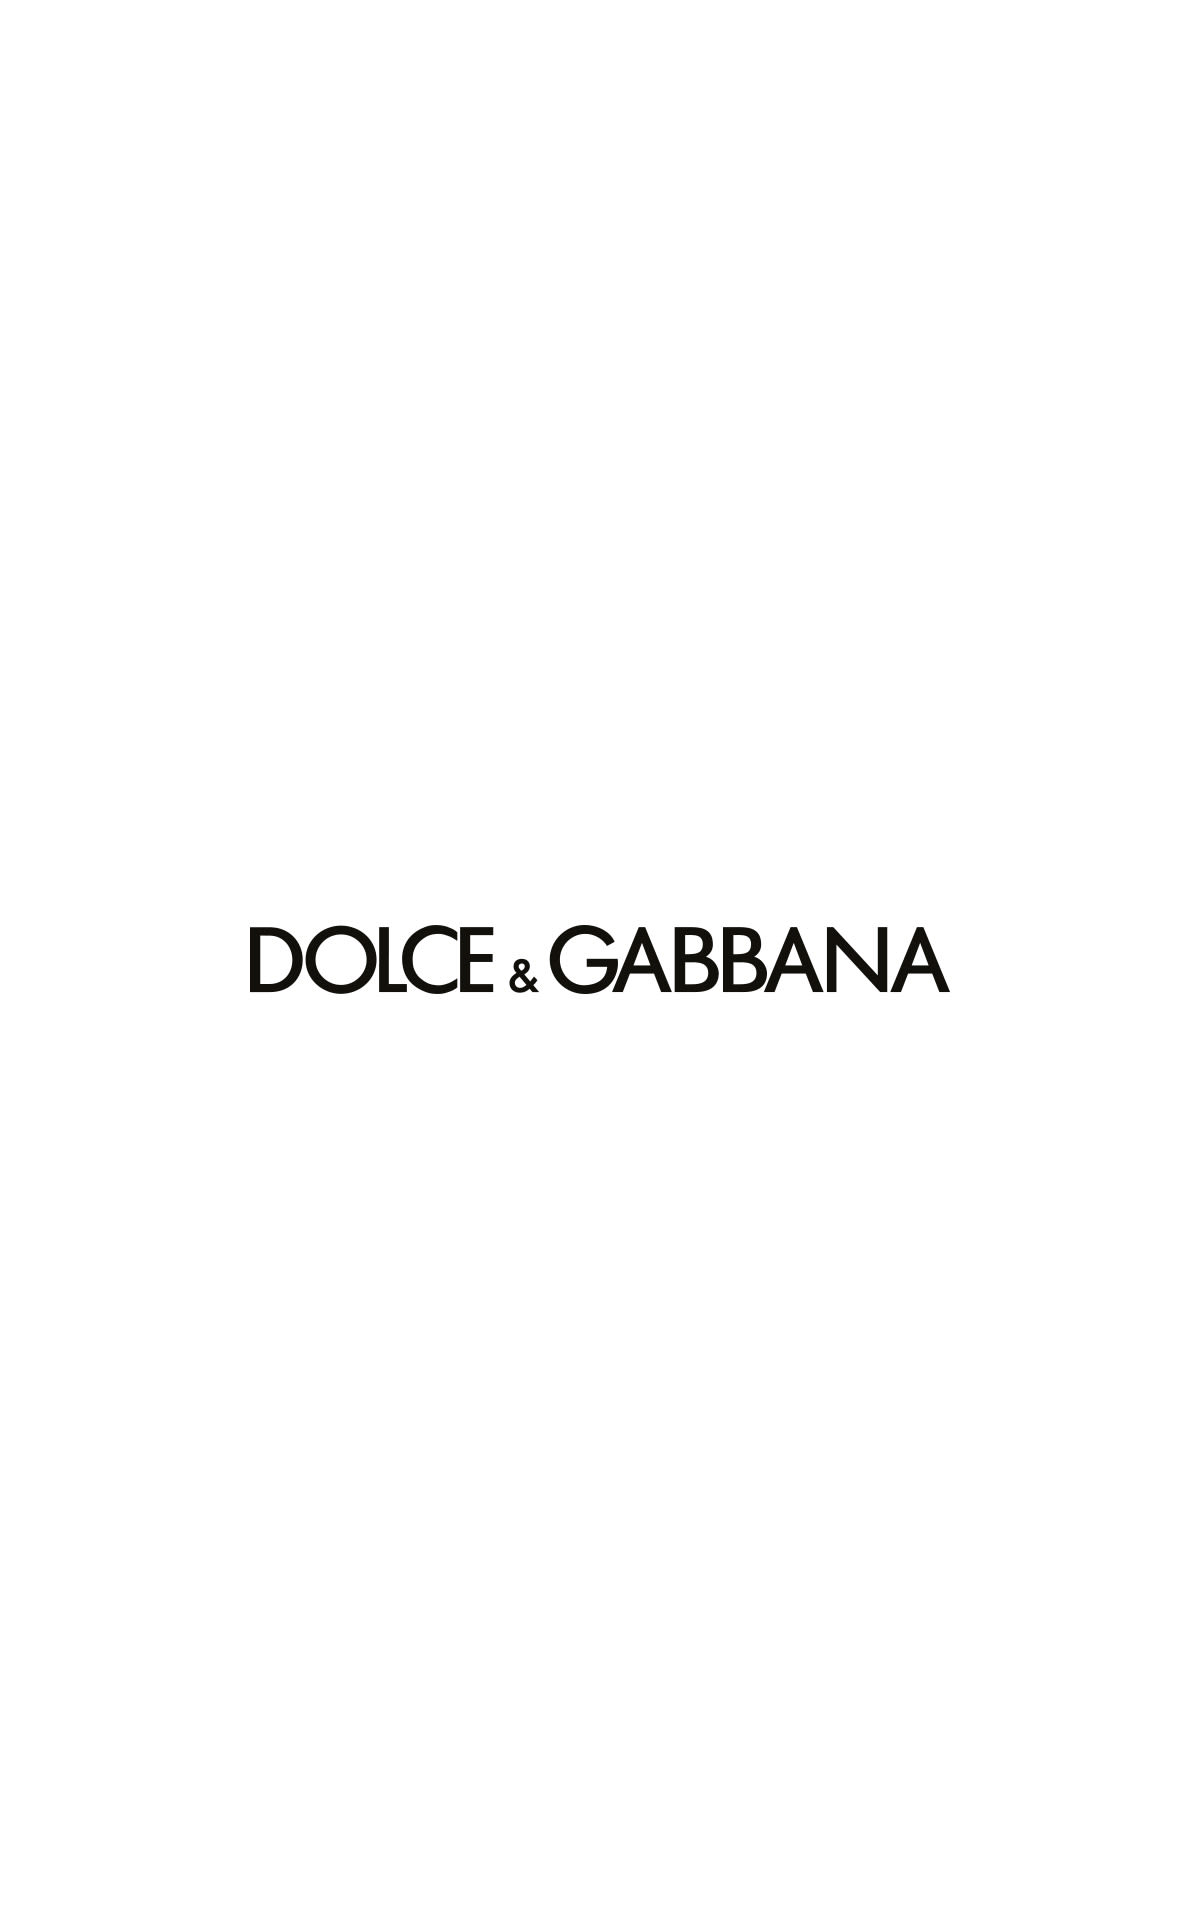 Dolce & Gabbana Outlet Paris | La Vallée Village